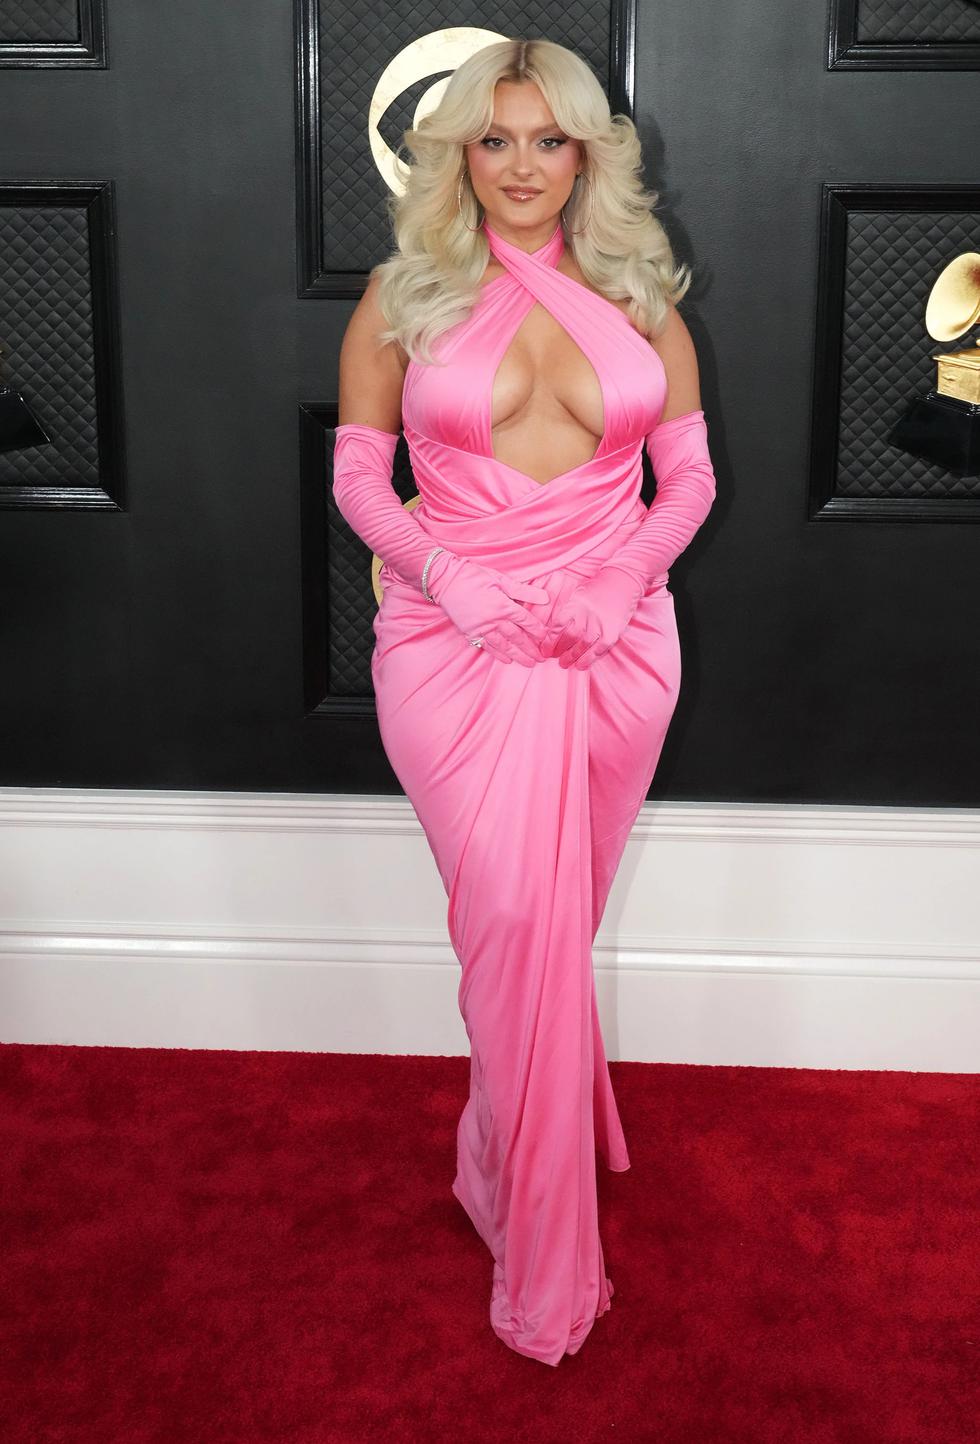 La intérprete del éxito "I'm Good (Blue)" llegó a la alfombra roja de los premios Grammy 2023 con un estilo muy 'barbie core'. La rubia vistió un traje escotado firmado por Moschino. (Foto: Getty Images).